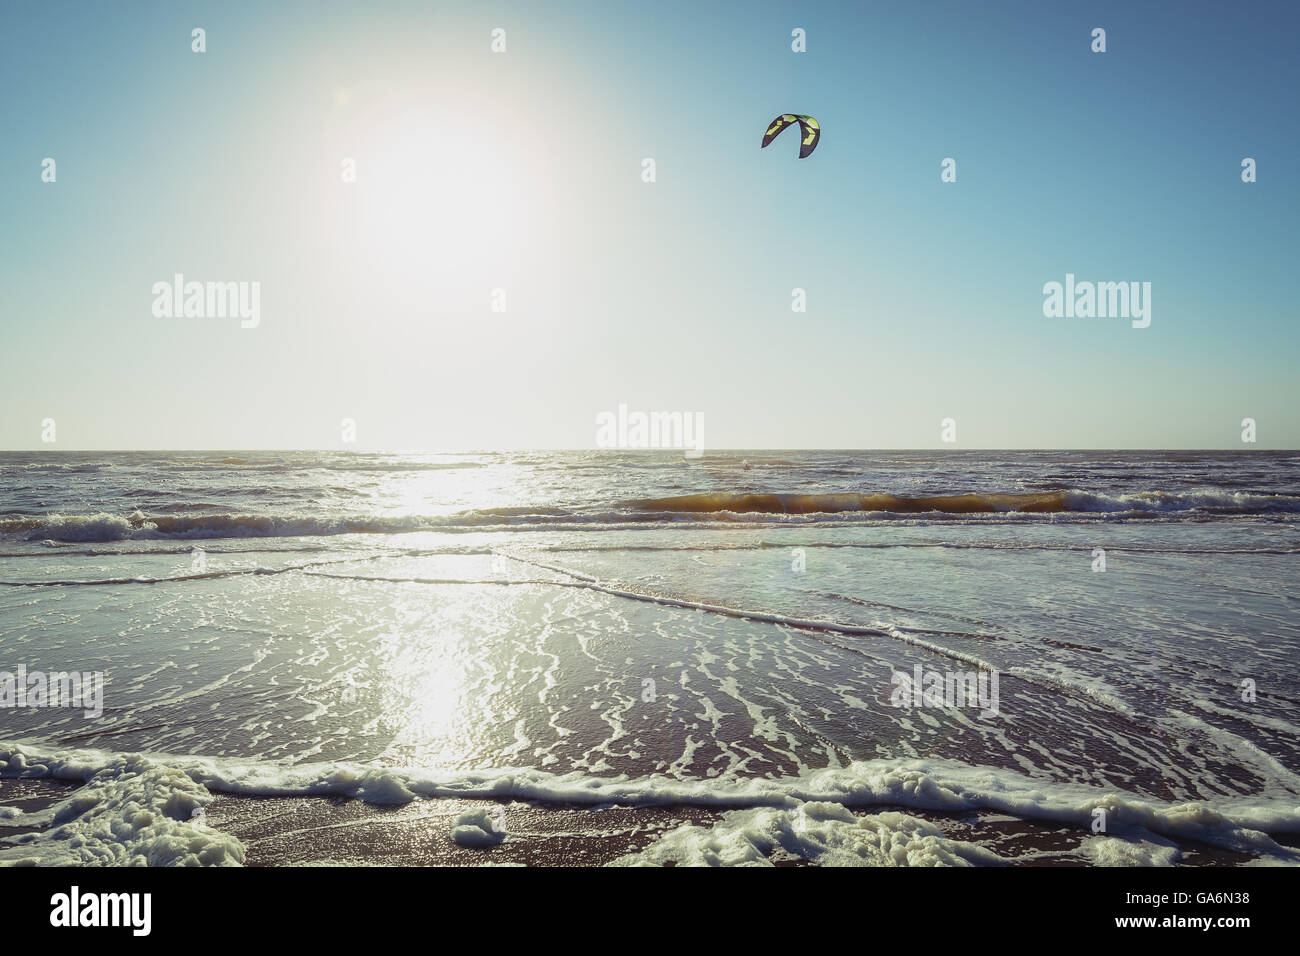 Paesi Bassi, lonely kiter presso la spiaggia del Mare del Nord in serata. Foto Stock